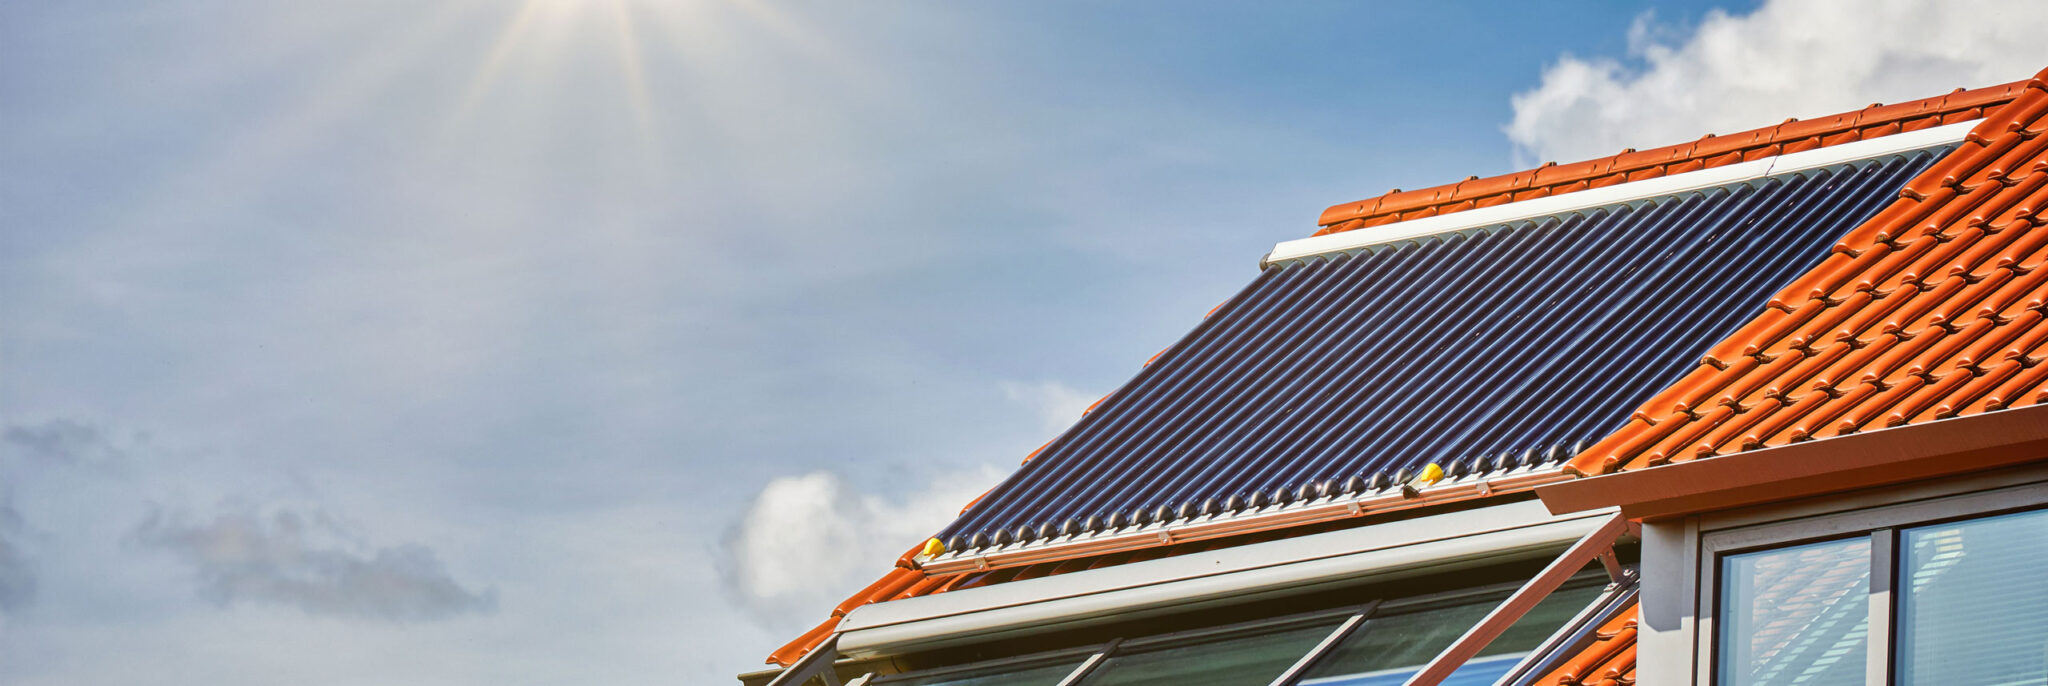 Dach mit Solarthermieanlage